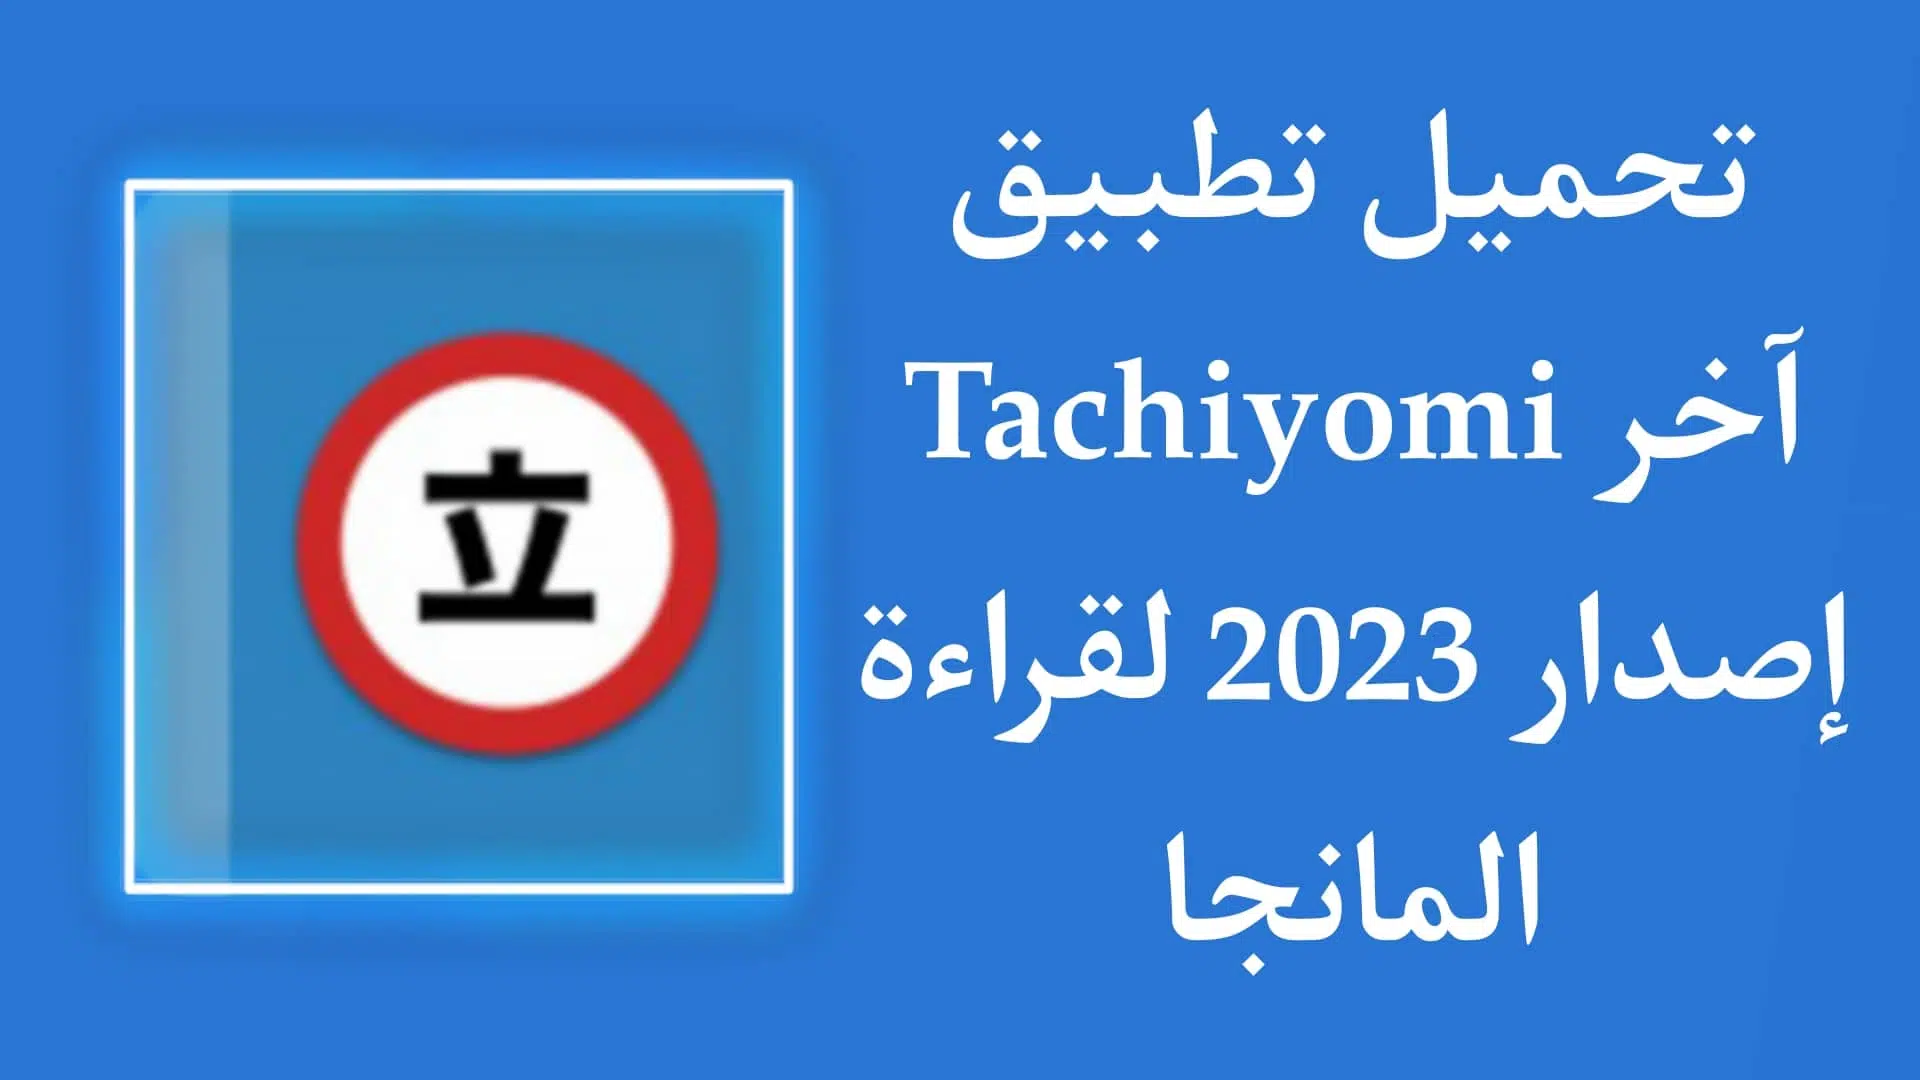 تحميل تطبيق Tachiyomi عربي لقراءة المانجا اخر اصدار للاندرويد